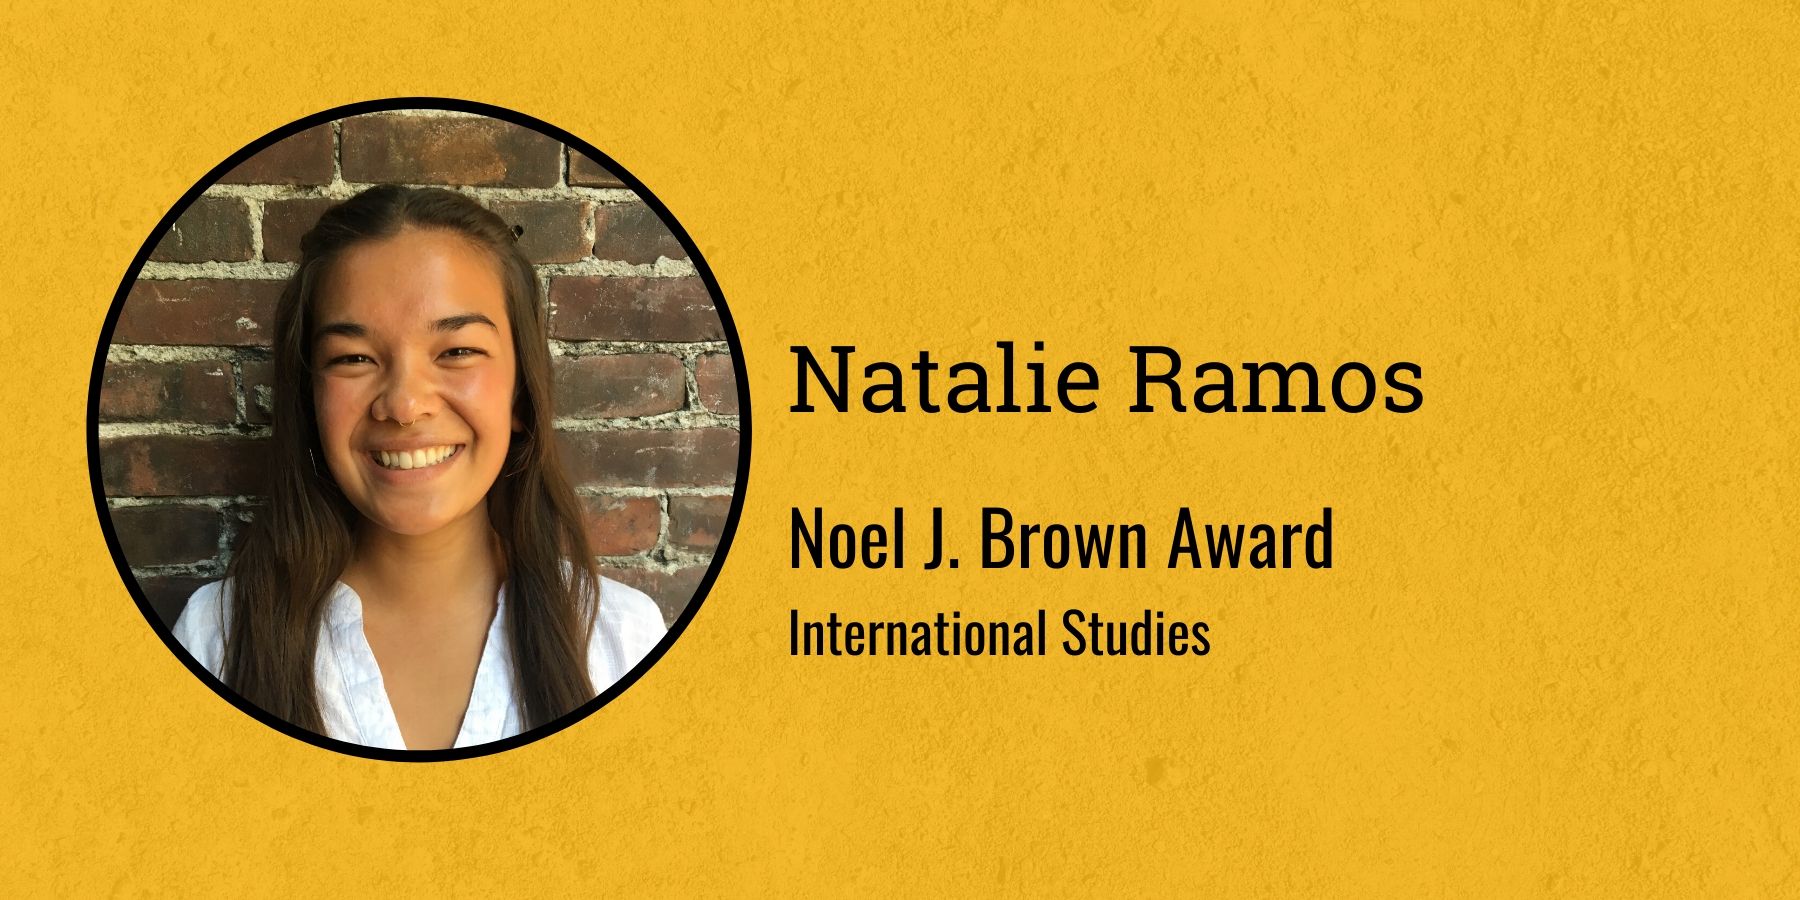 Photo of Natalie Ramos and text: Noel J. Brown Award, International Studies